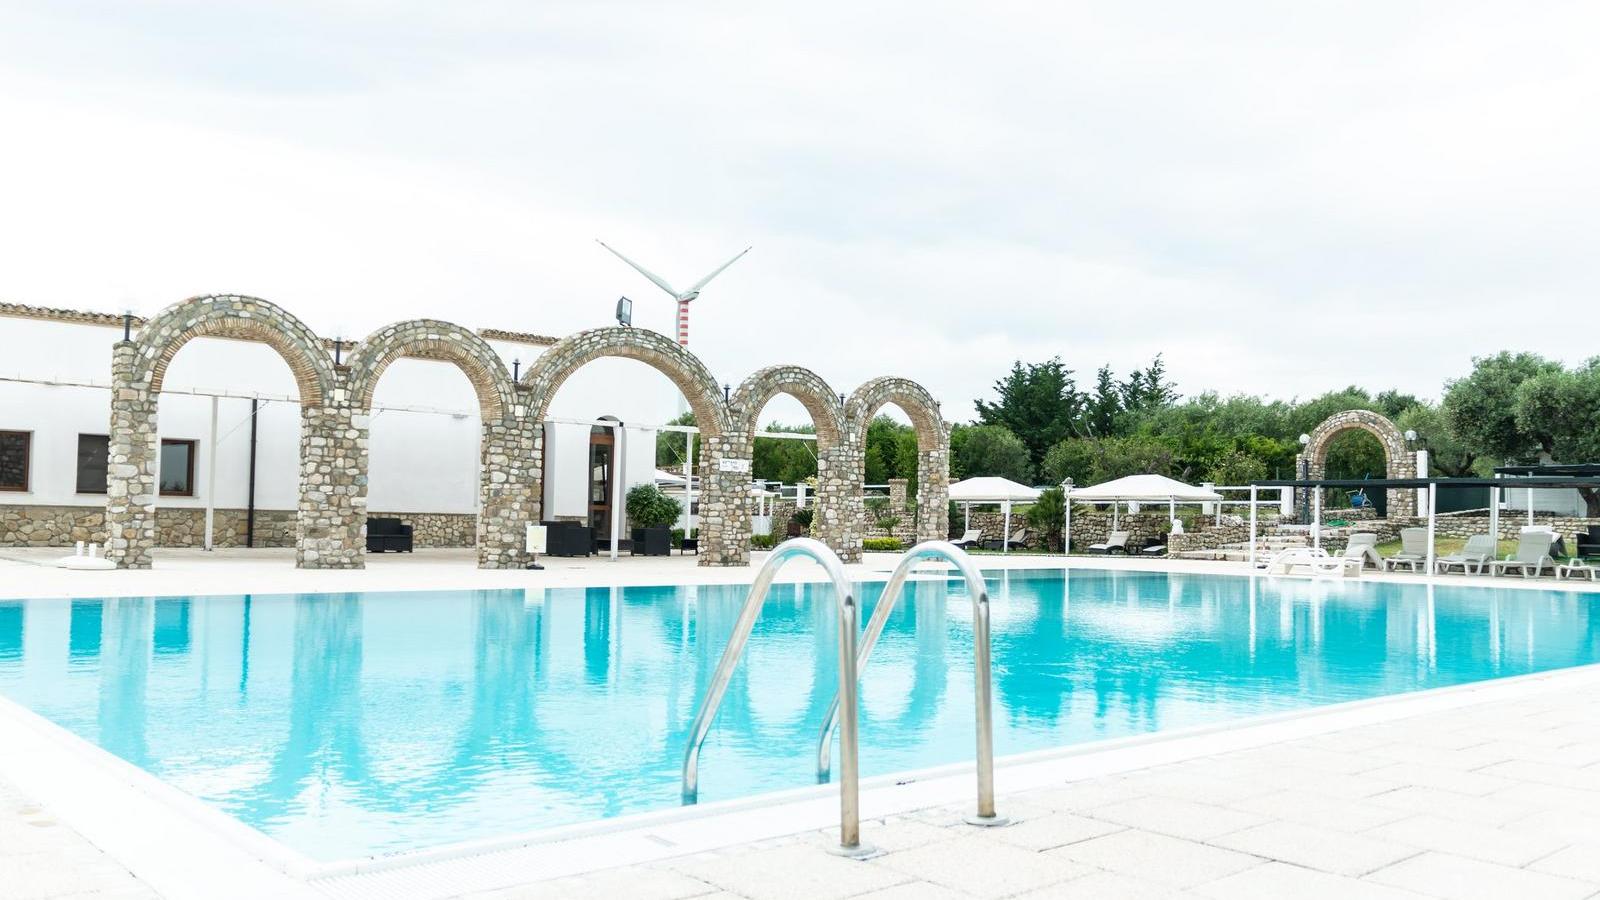 Ristorante con piscina - Agli Archi di Villa Maria | Localtourism.it